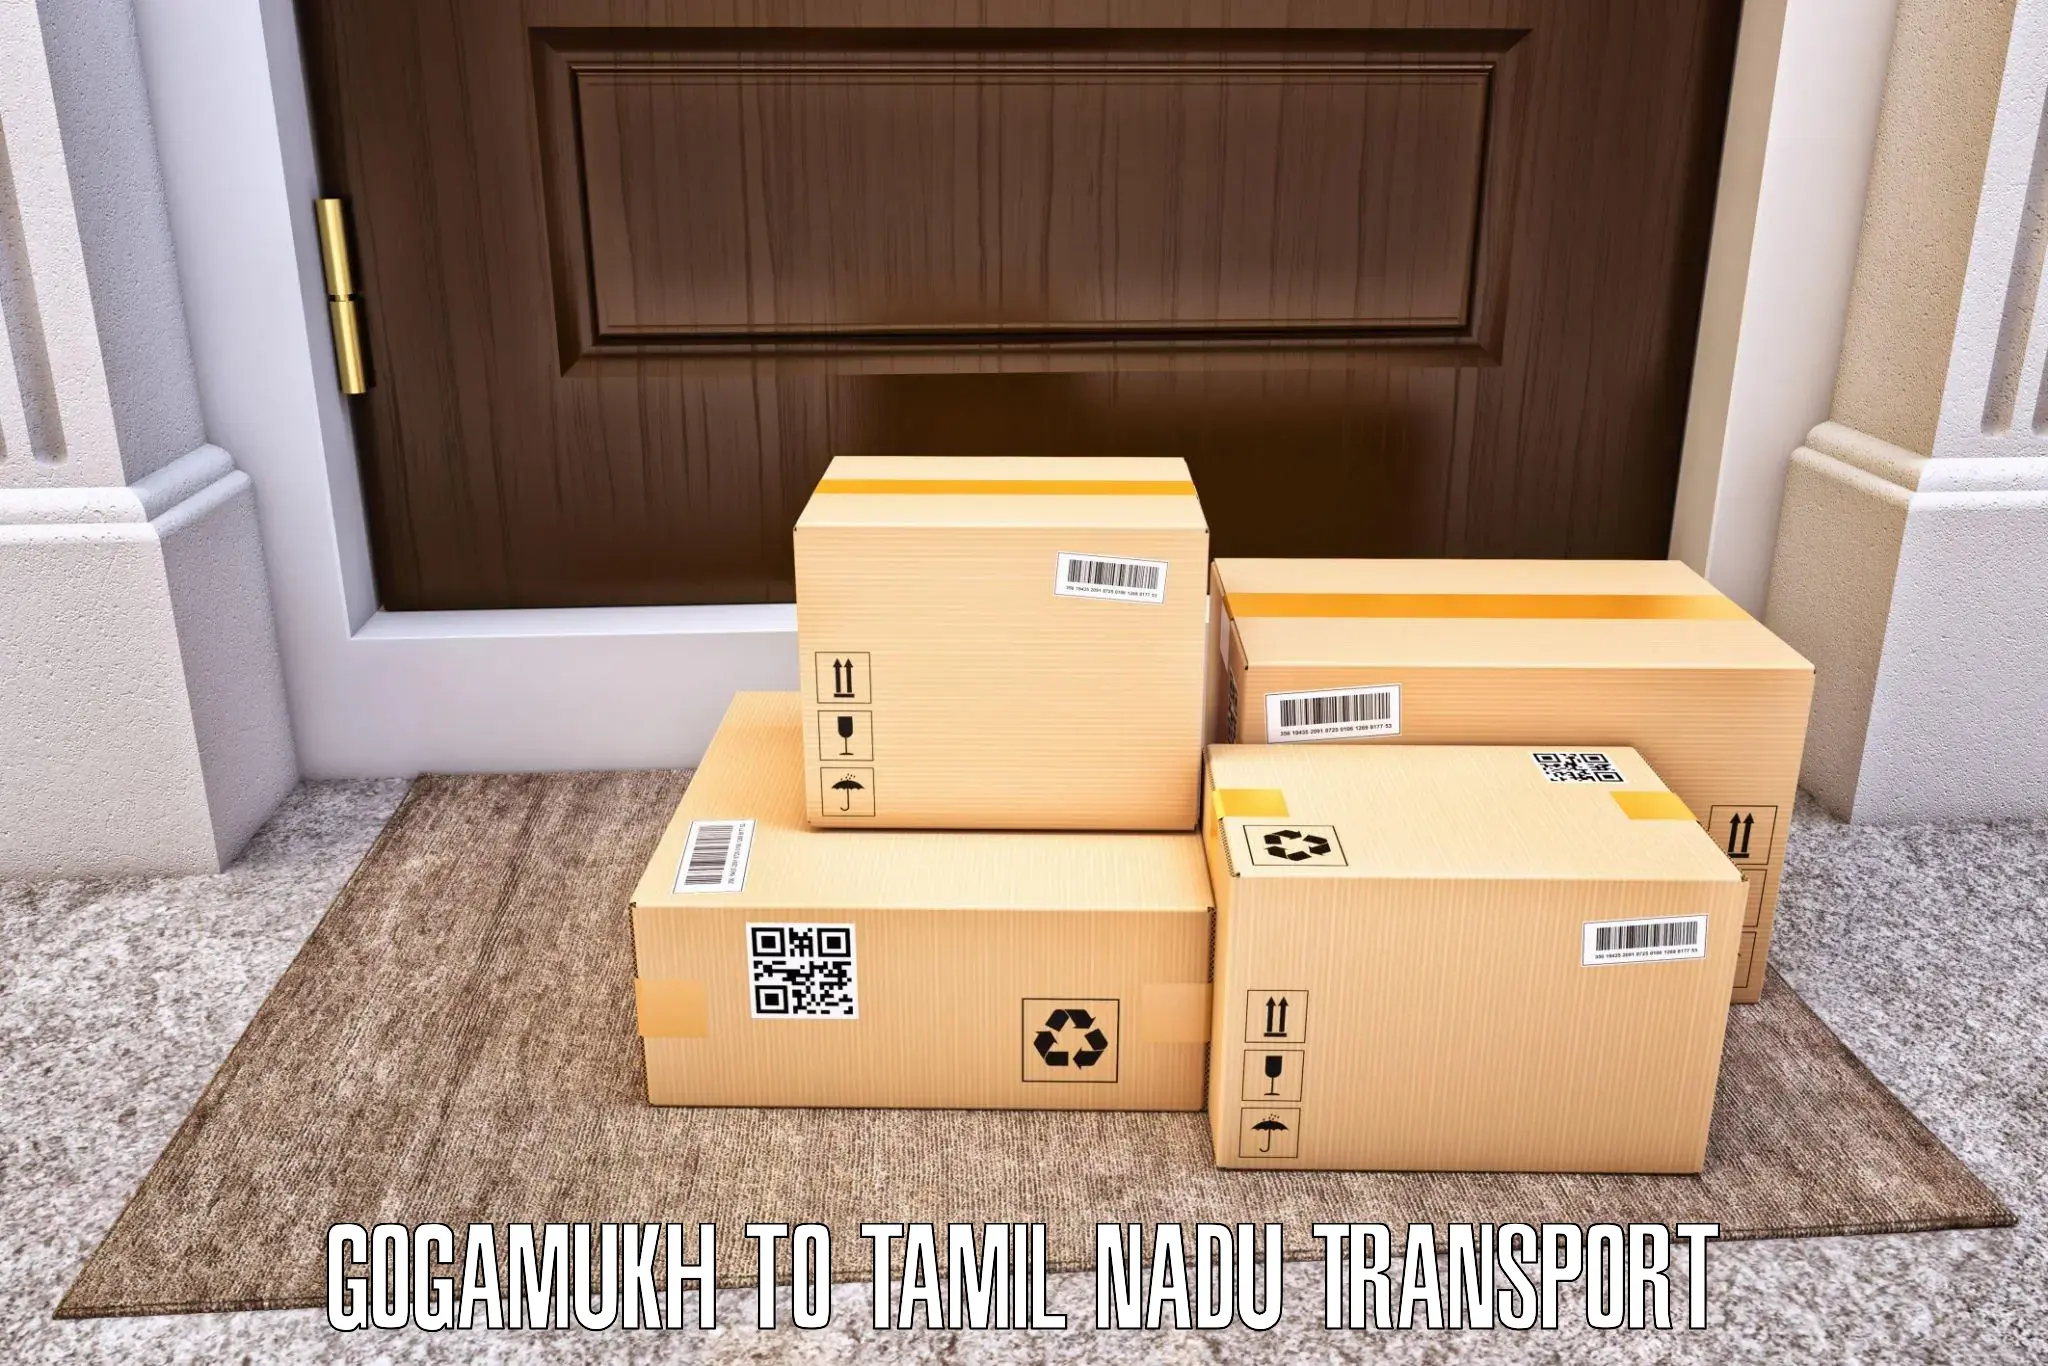 Shipping partner Gogamukh to Tamil Nadu